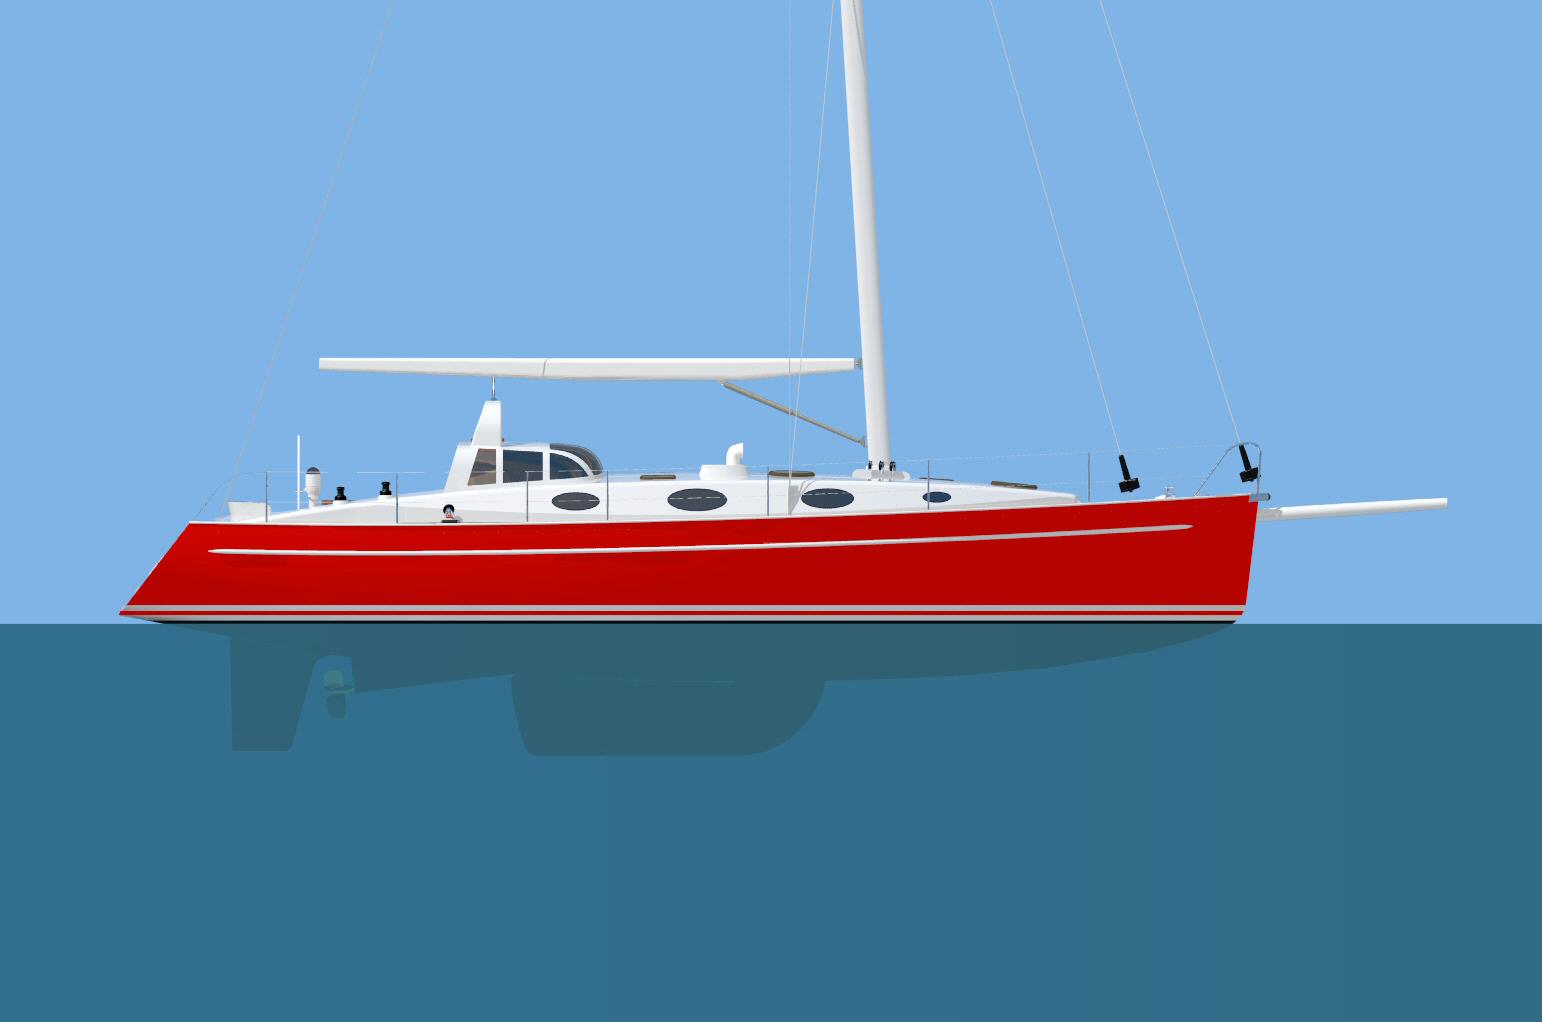 tanton yacht design.: swing keel; centerboard;daggerboard